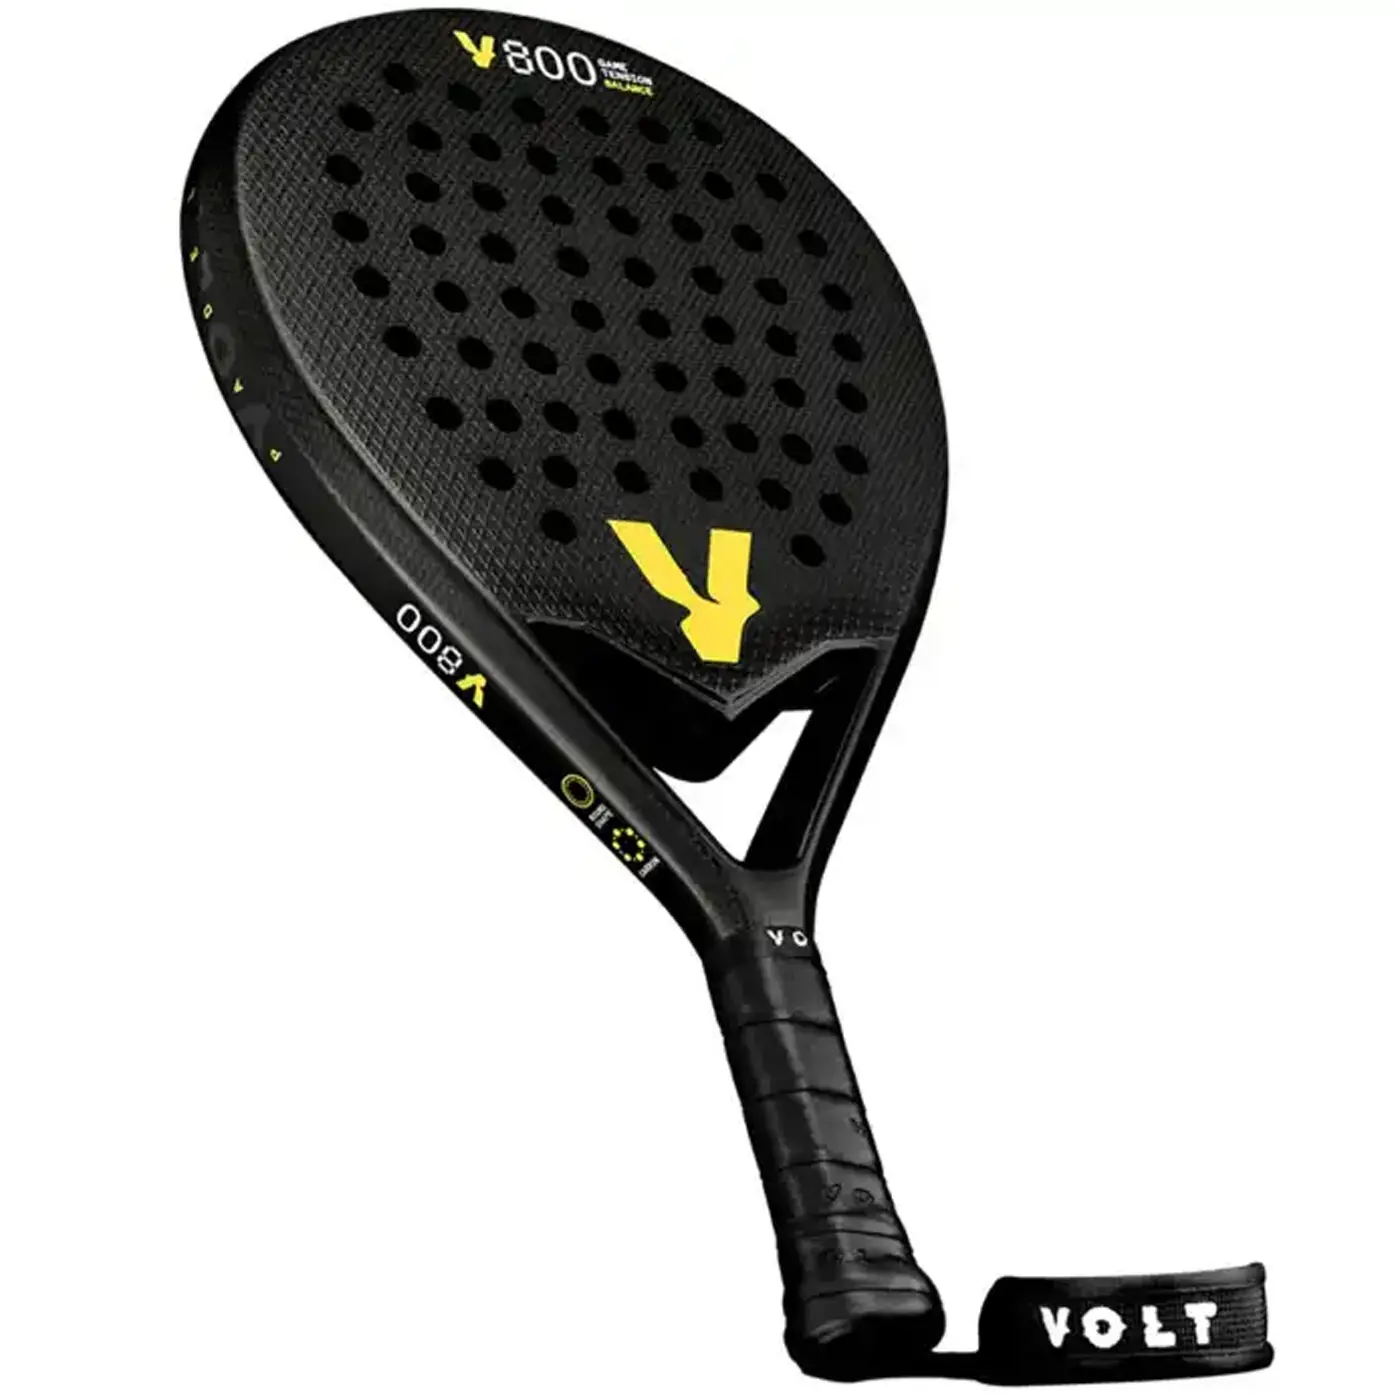 Volt 800 V22 Padel Racket, volt padel rackets Image 2